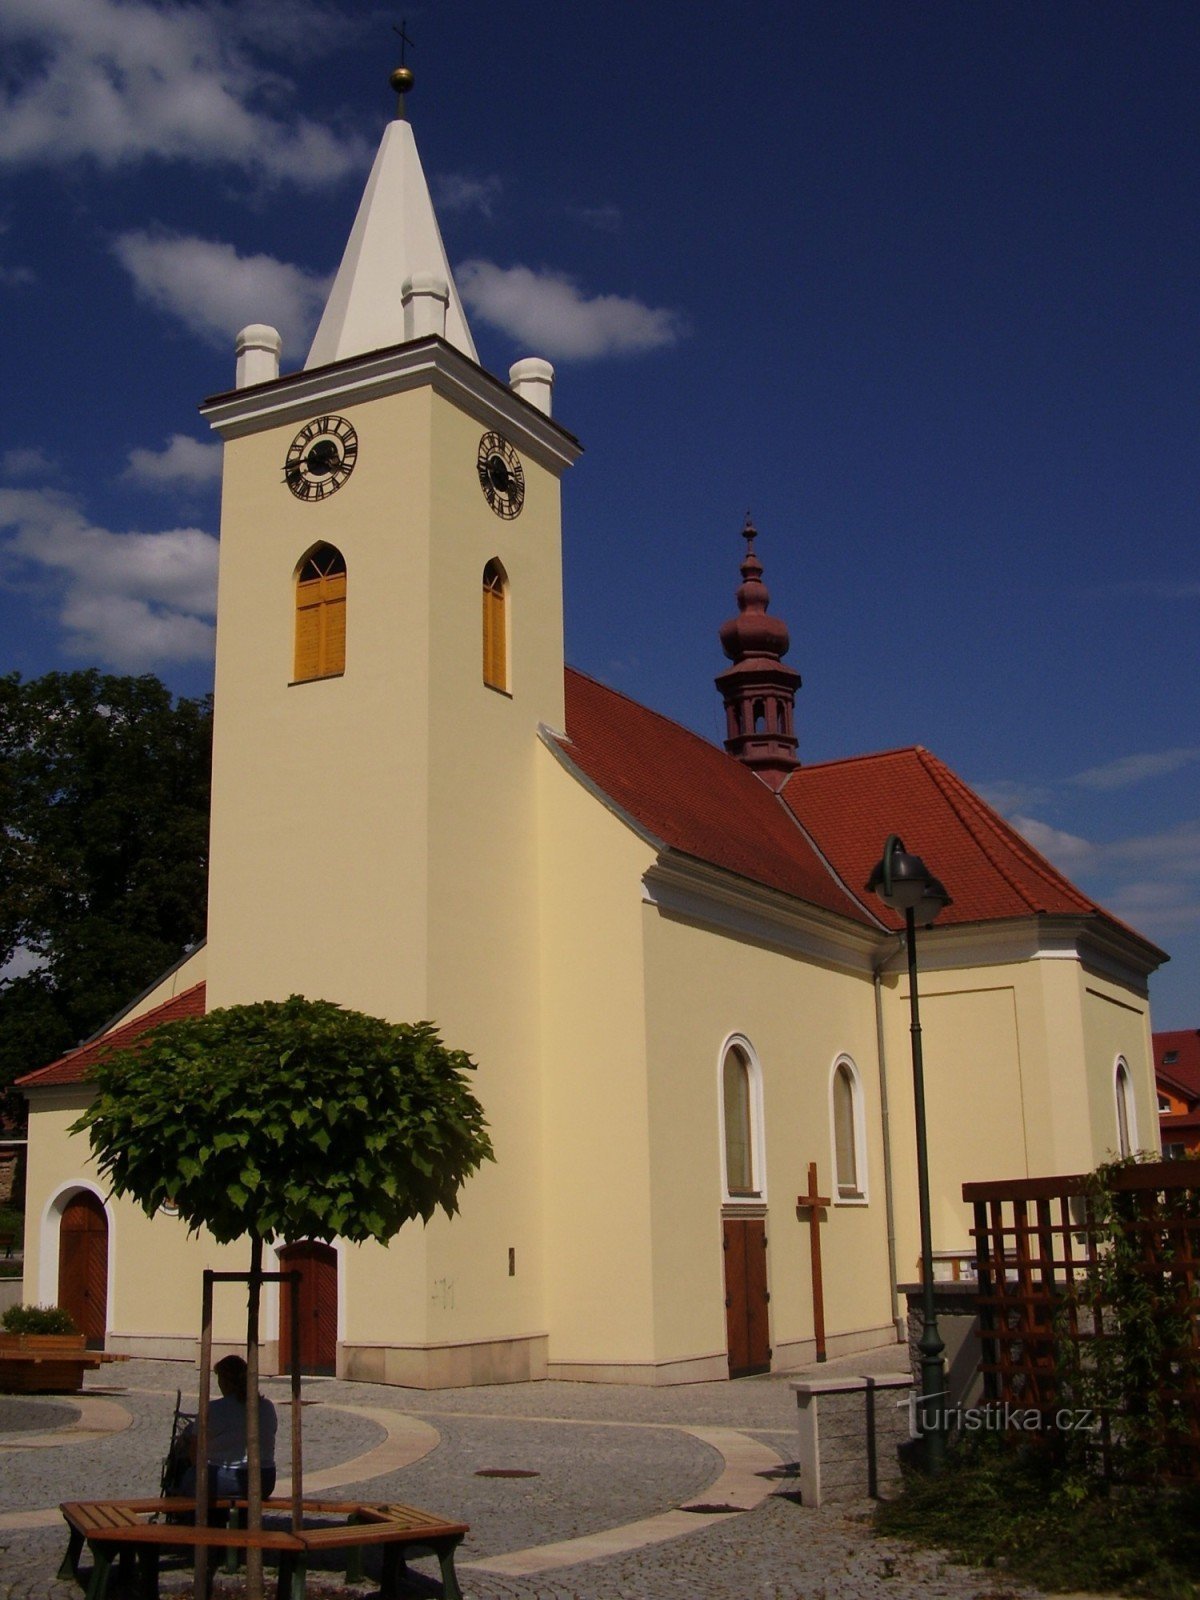 Nhà thờ St. Vavřine ở Brno - Řečkovice (trang trí nghệ thuật) và môi trường xung quanh nó